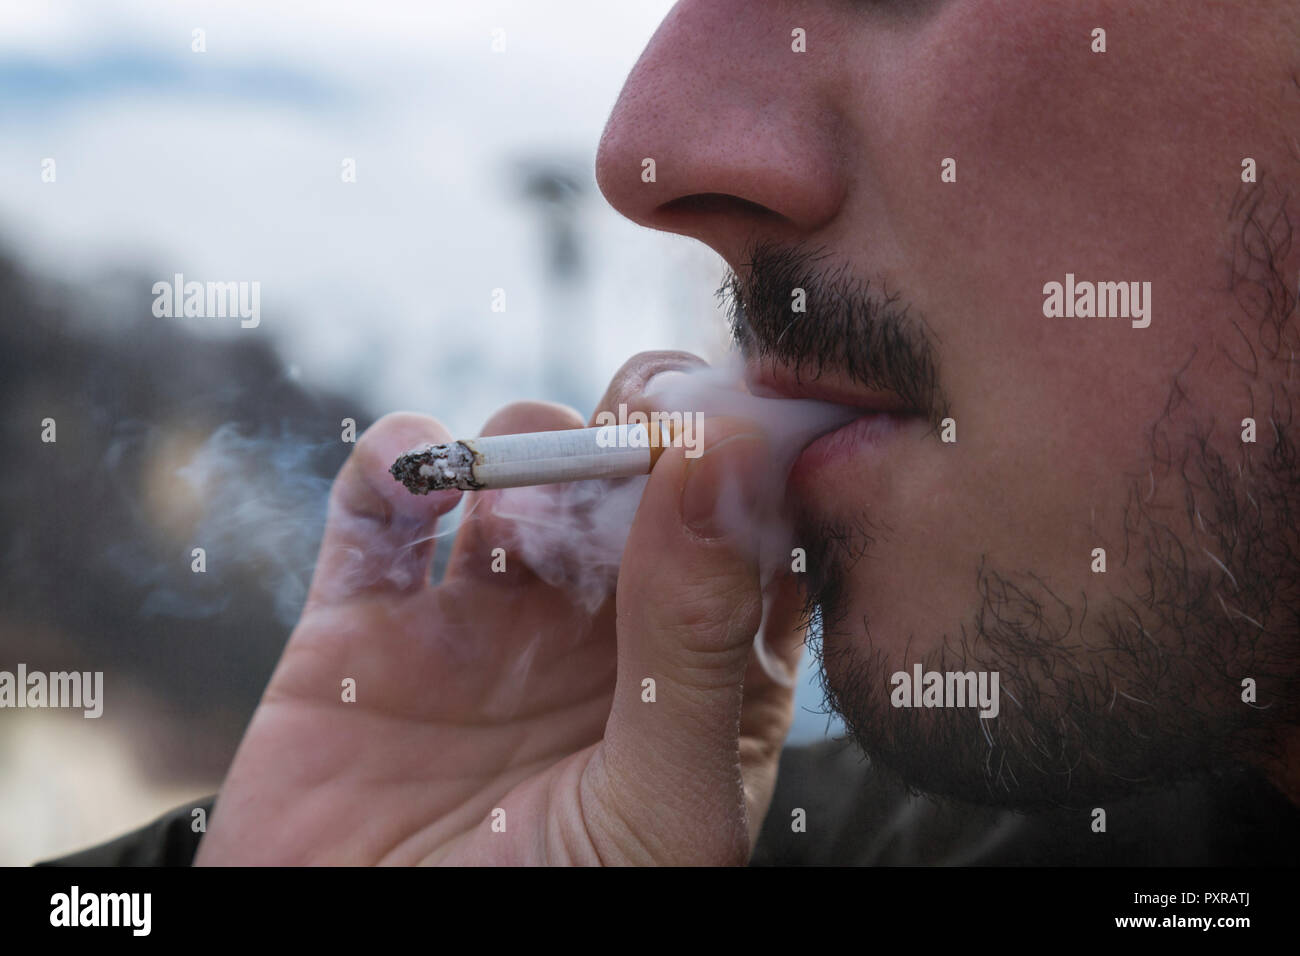 Dettaglio del fumatore, sigarette e fumo Foto Stock